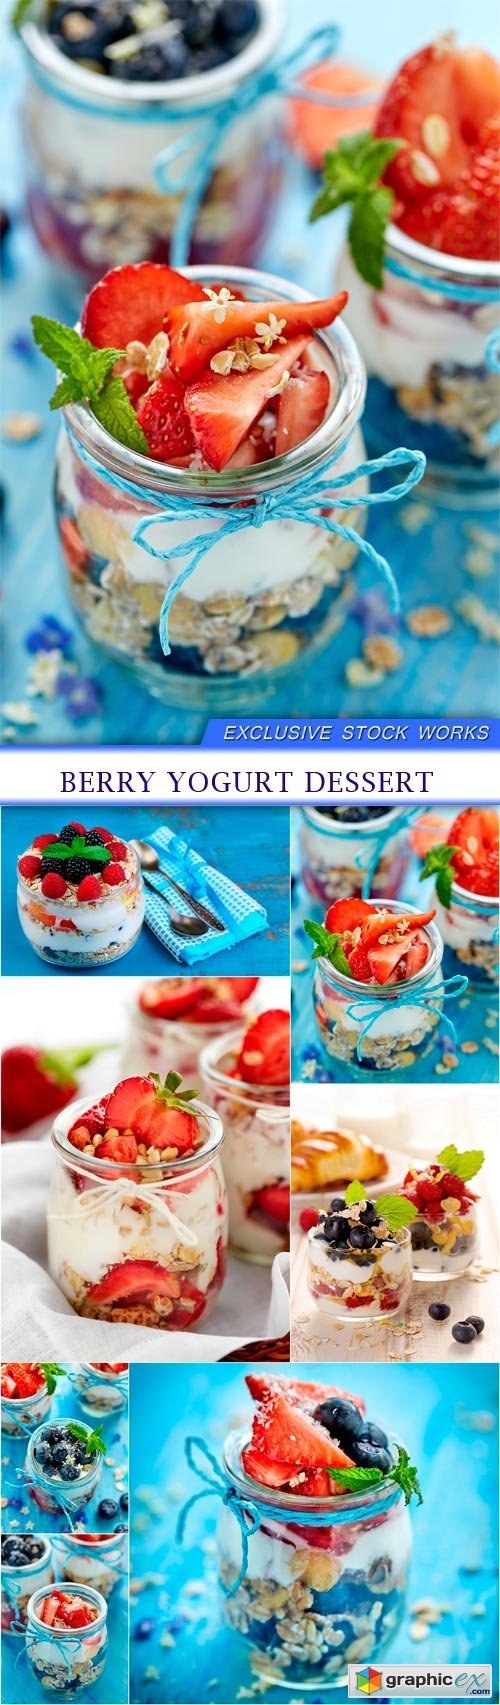 Berry yogurt dessert 7X JPEG